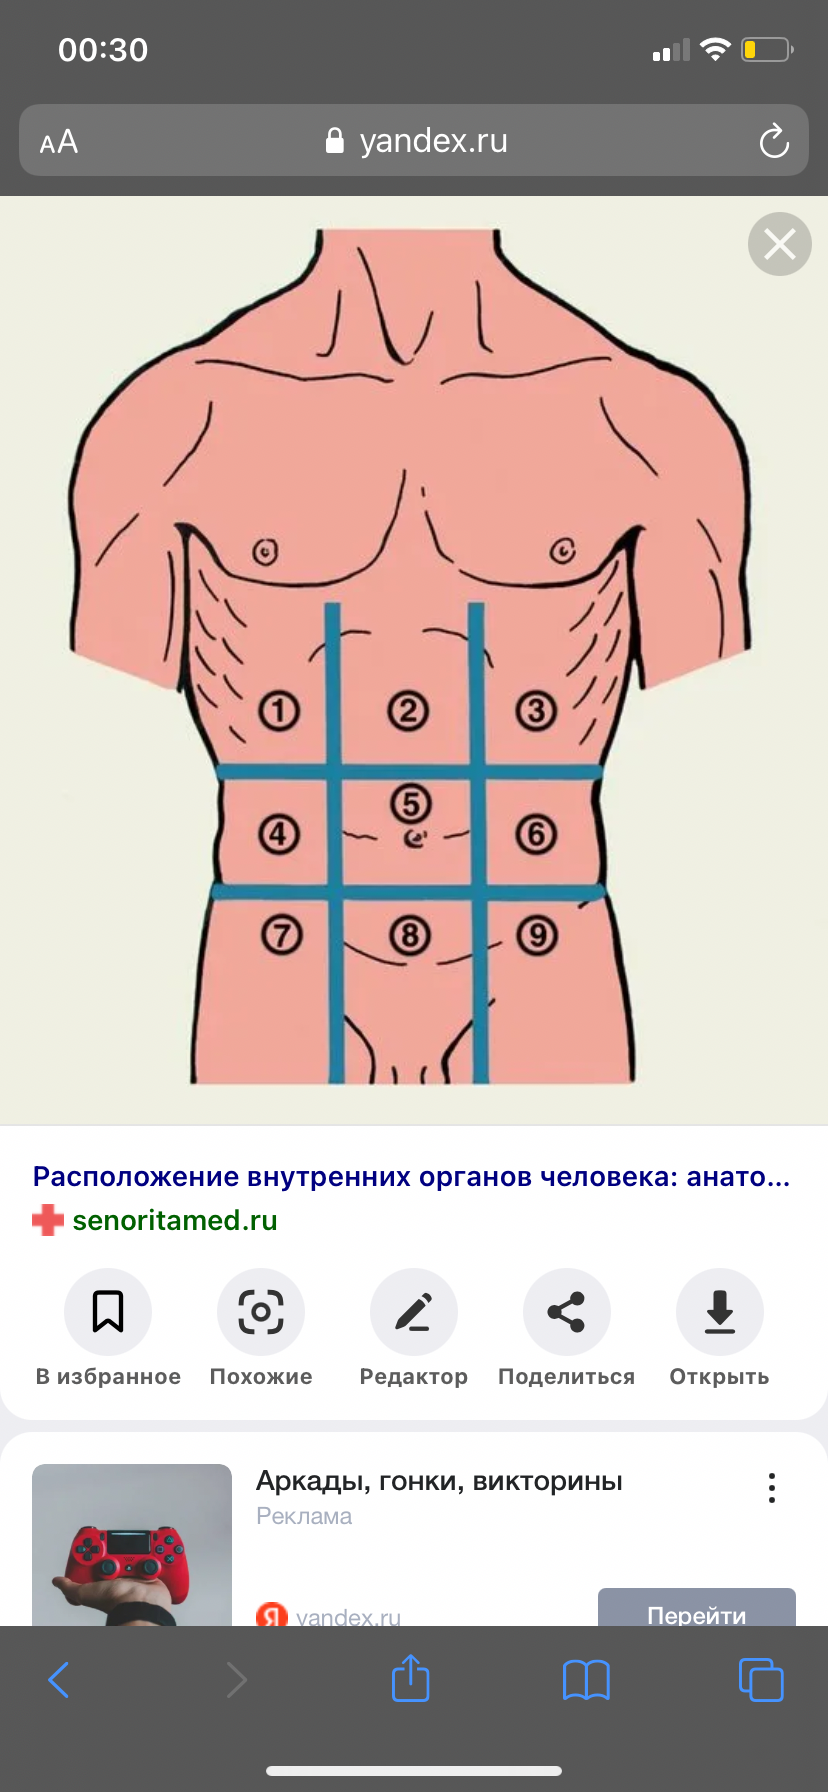 Эпигастральная область желудка. Подложечная область желудка. Эпигастральная область желудка где находится фото. Подложечная область желудка это где находится.